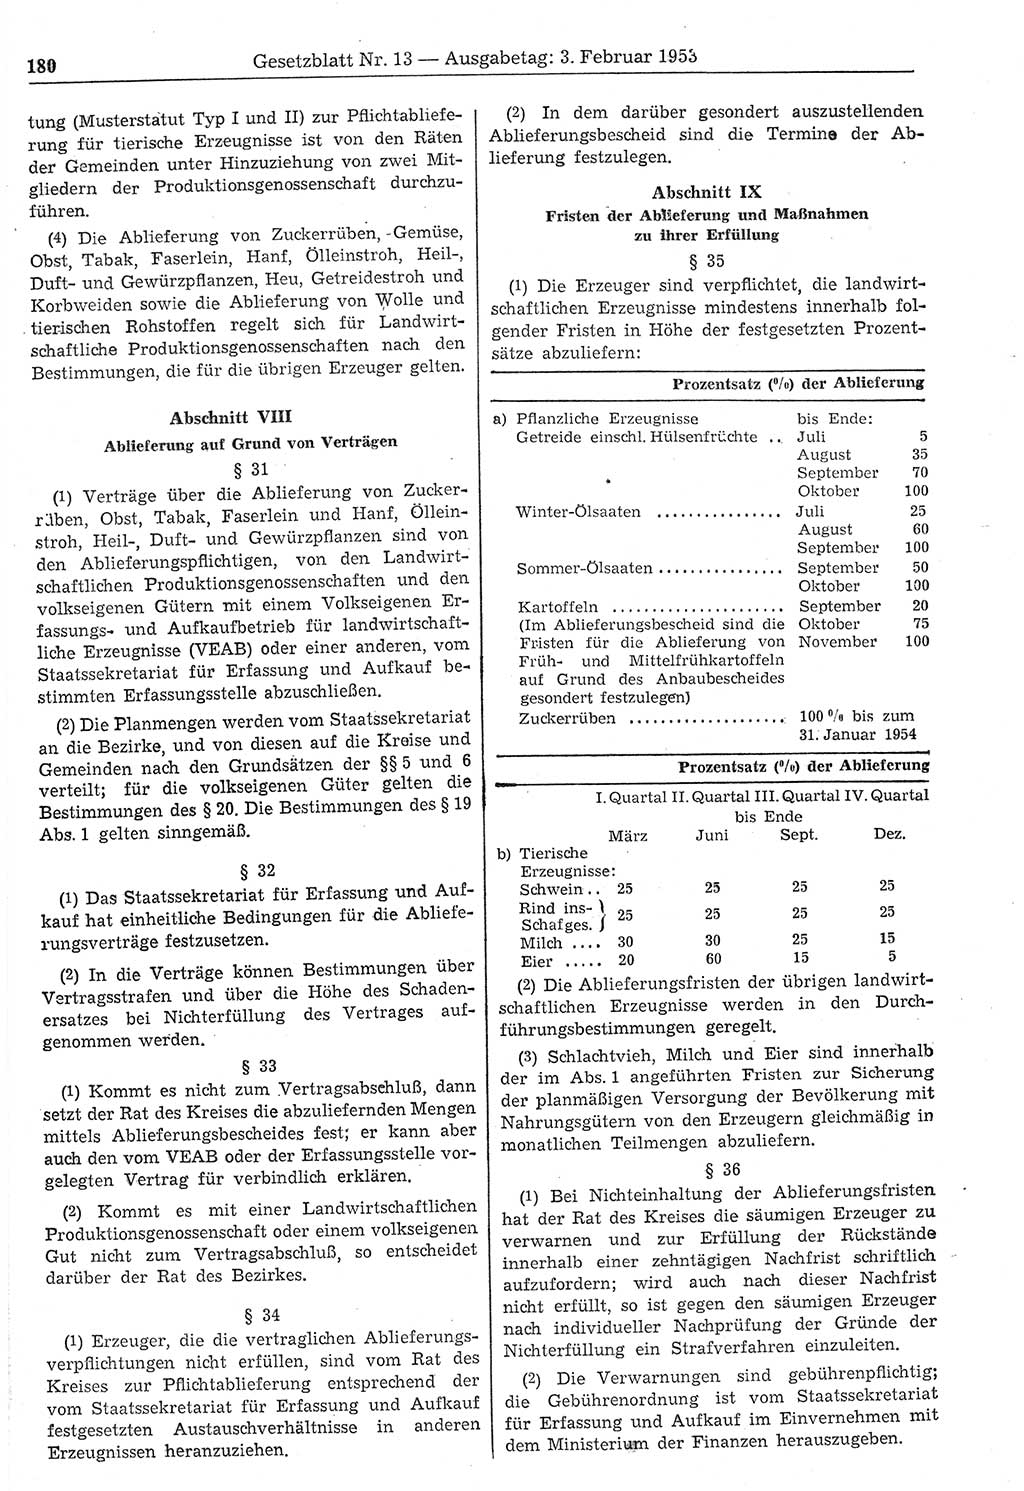 Gesetzblatt (GBl.) der Deutschen Demokratischen Republik (DDR) 1953, Seite 180 (GBl. DDR 1953, S. 180)